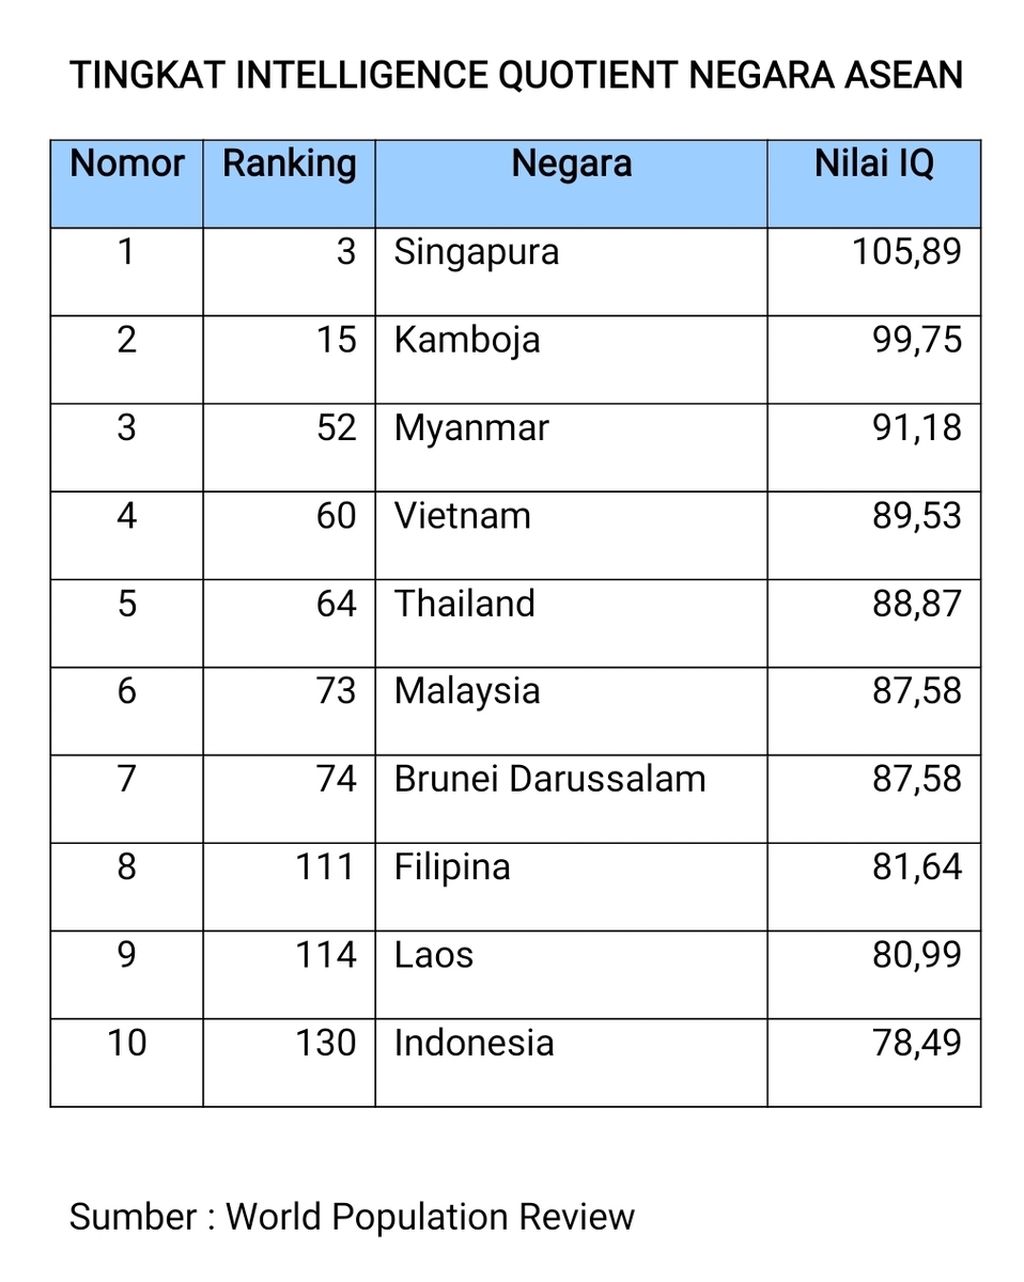 Skor tingkat <i>intelligence quotient</i> (IQ) di negara-negara ASEAN. Tingkat IQ rata-rata orang Indonesia paling rendah di antara negara ASEAN lain.